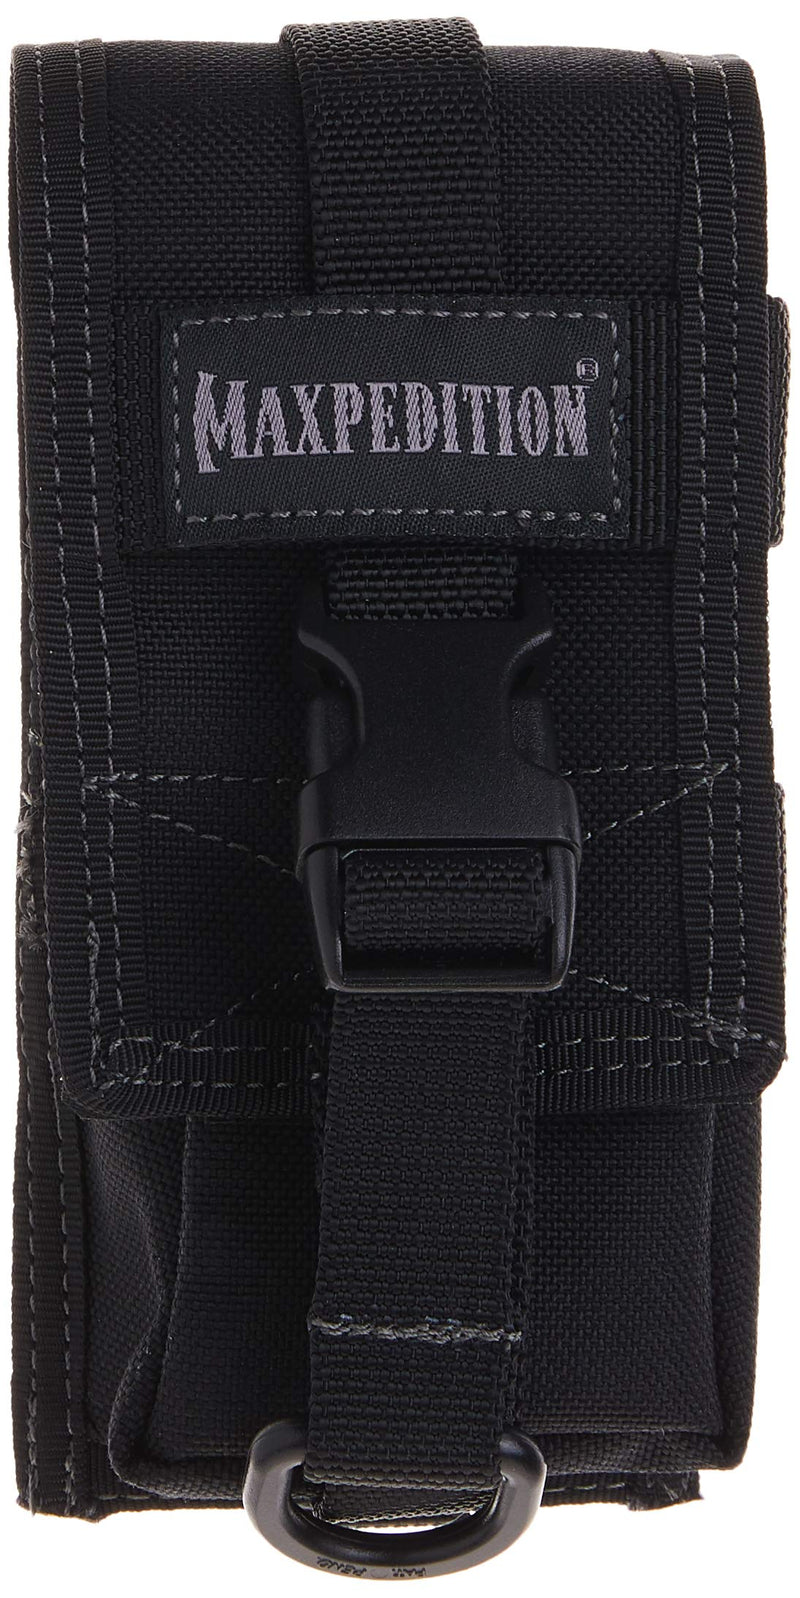 [AUSTRALIA] - Maxpedition TC-1 Pouch Black 